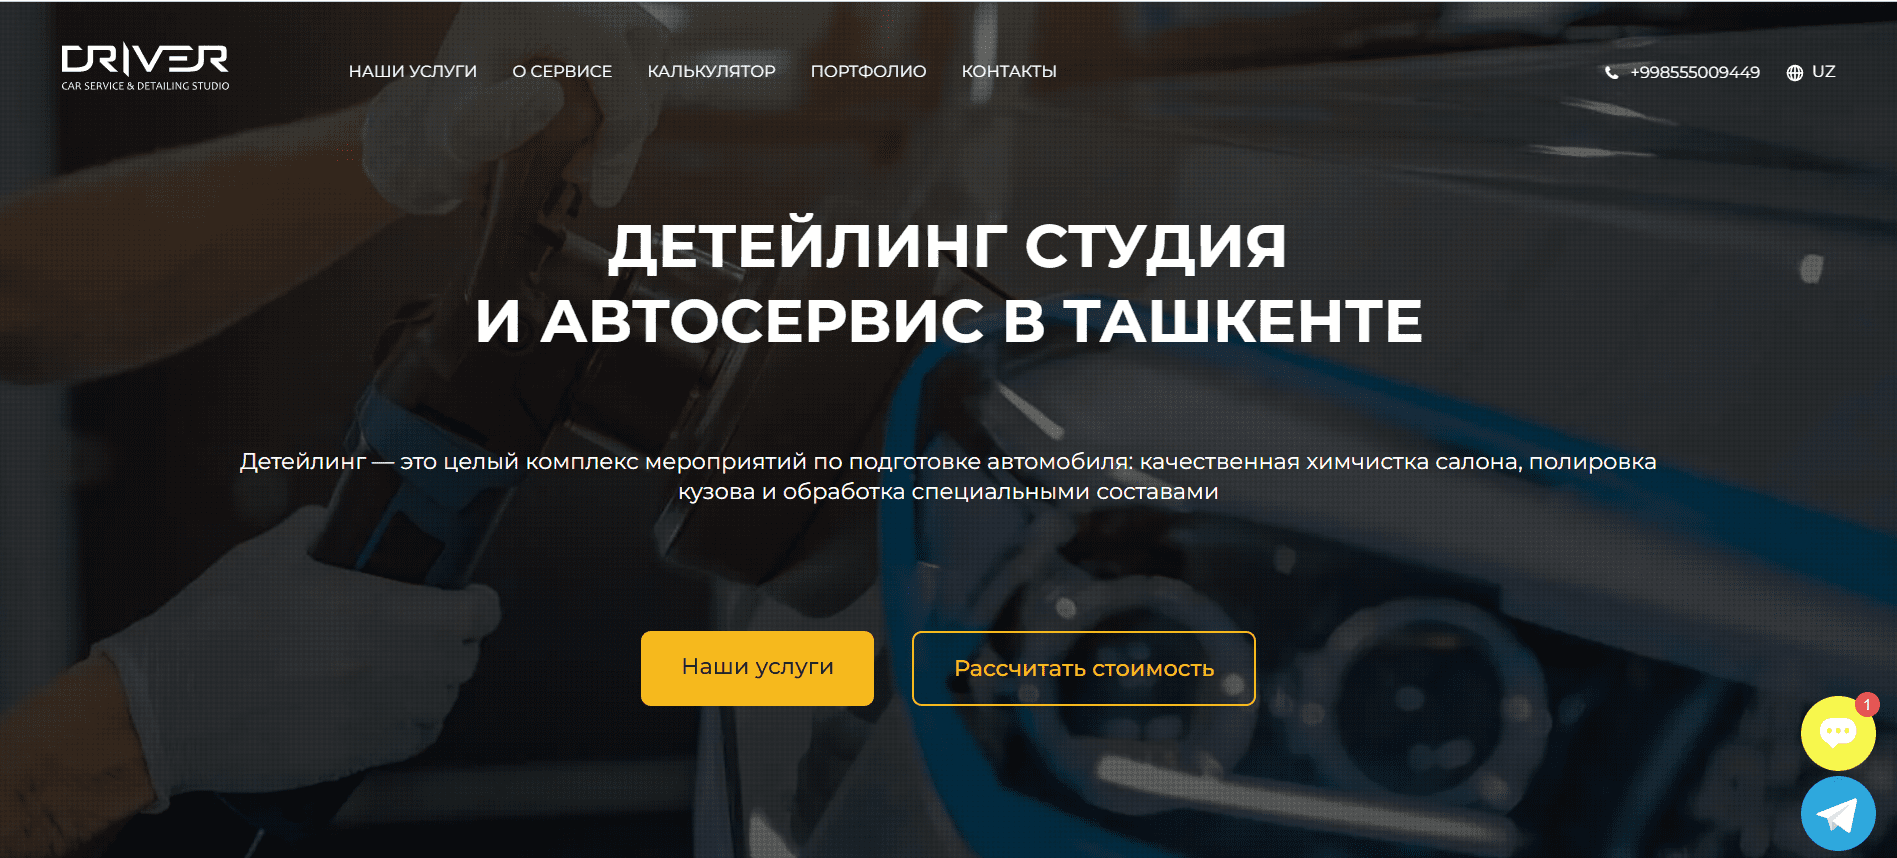 Car-driver.uz - официальный сайт